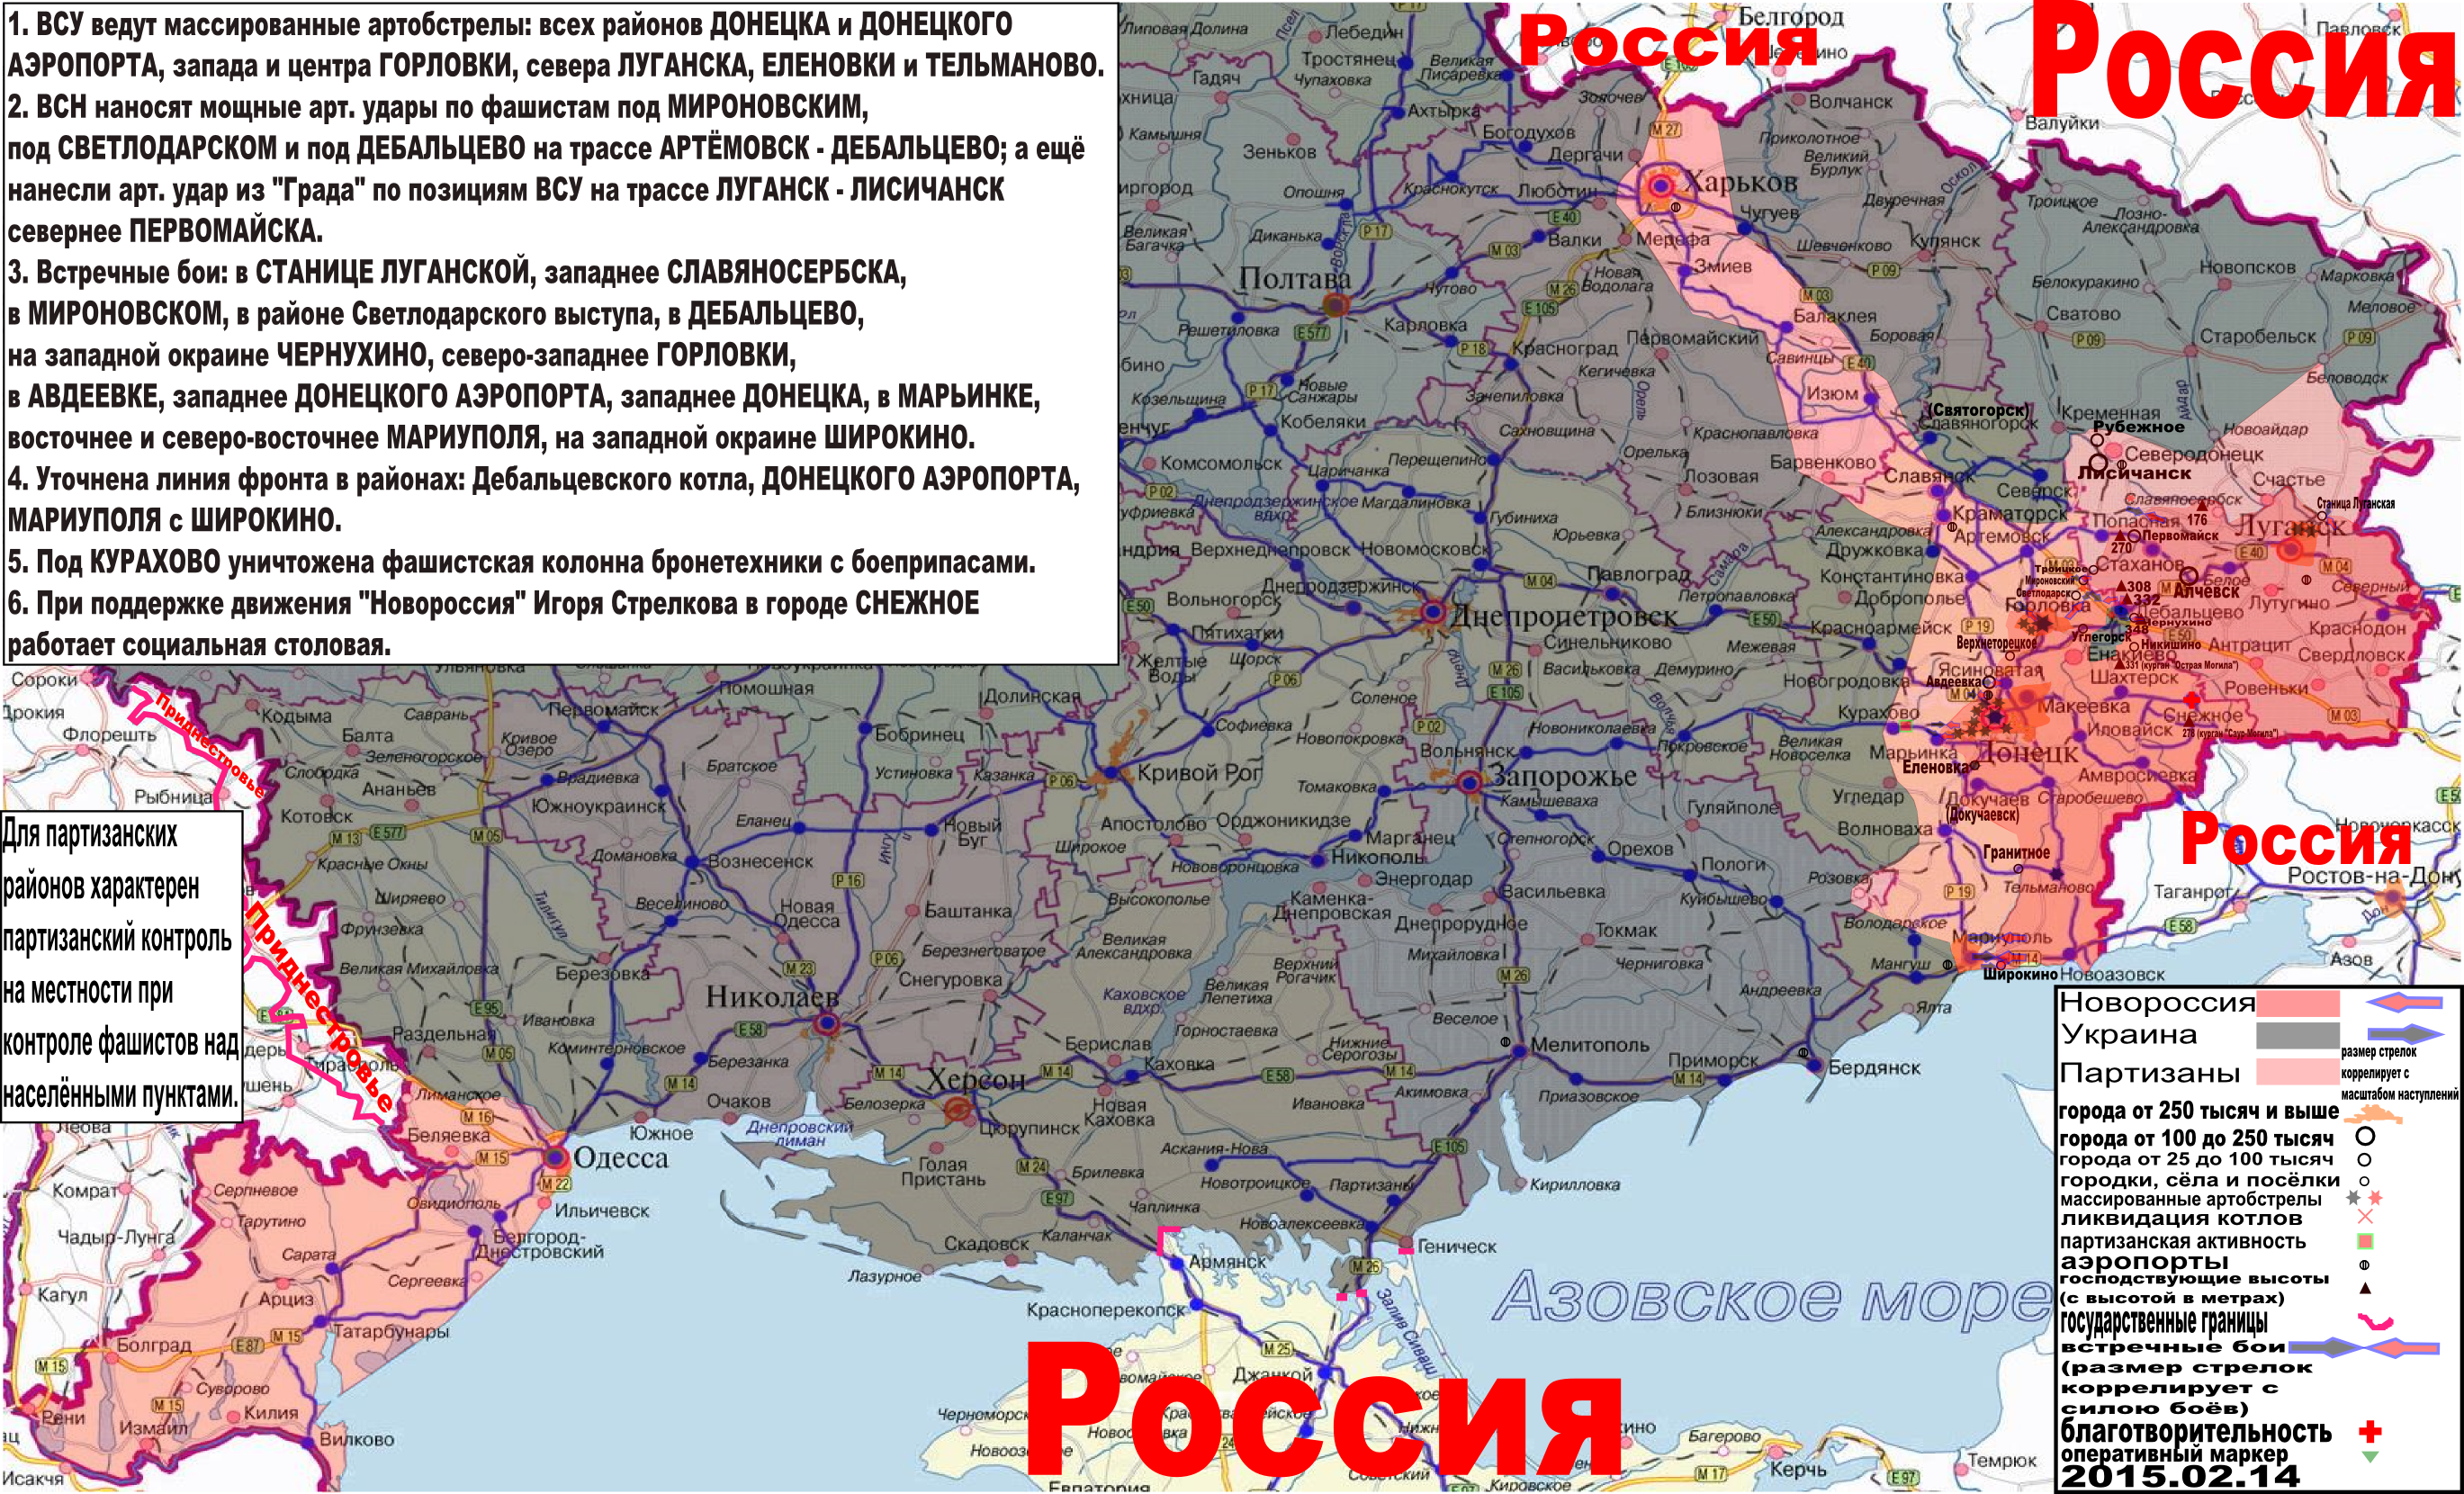 Карта боевых действий и событий в Новороссии с обозначением зон партизанской активности за 15 февраля 